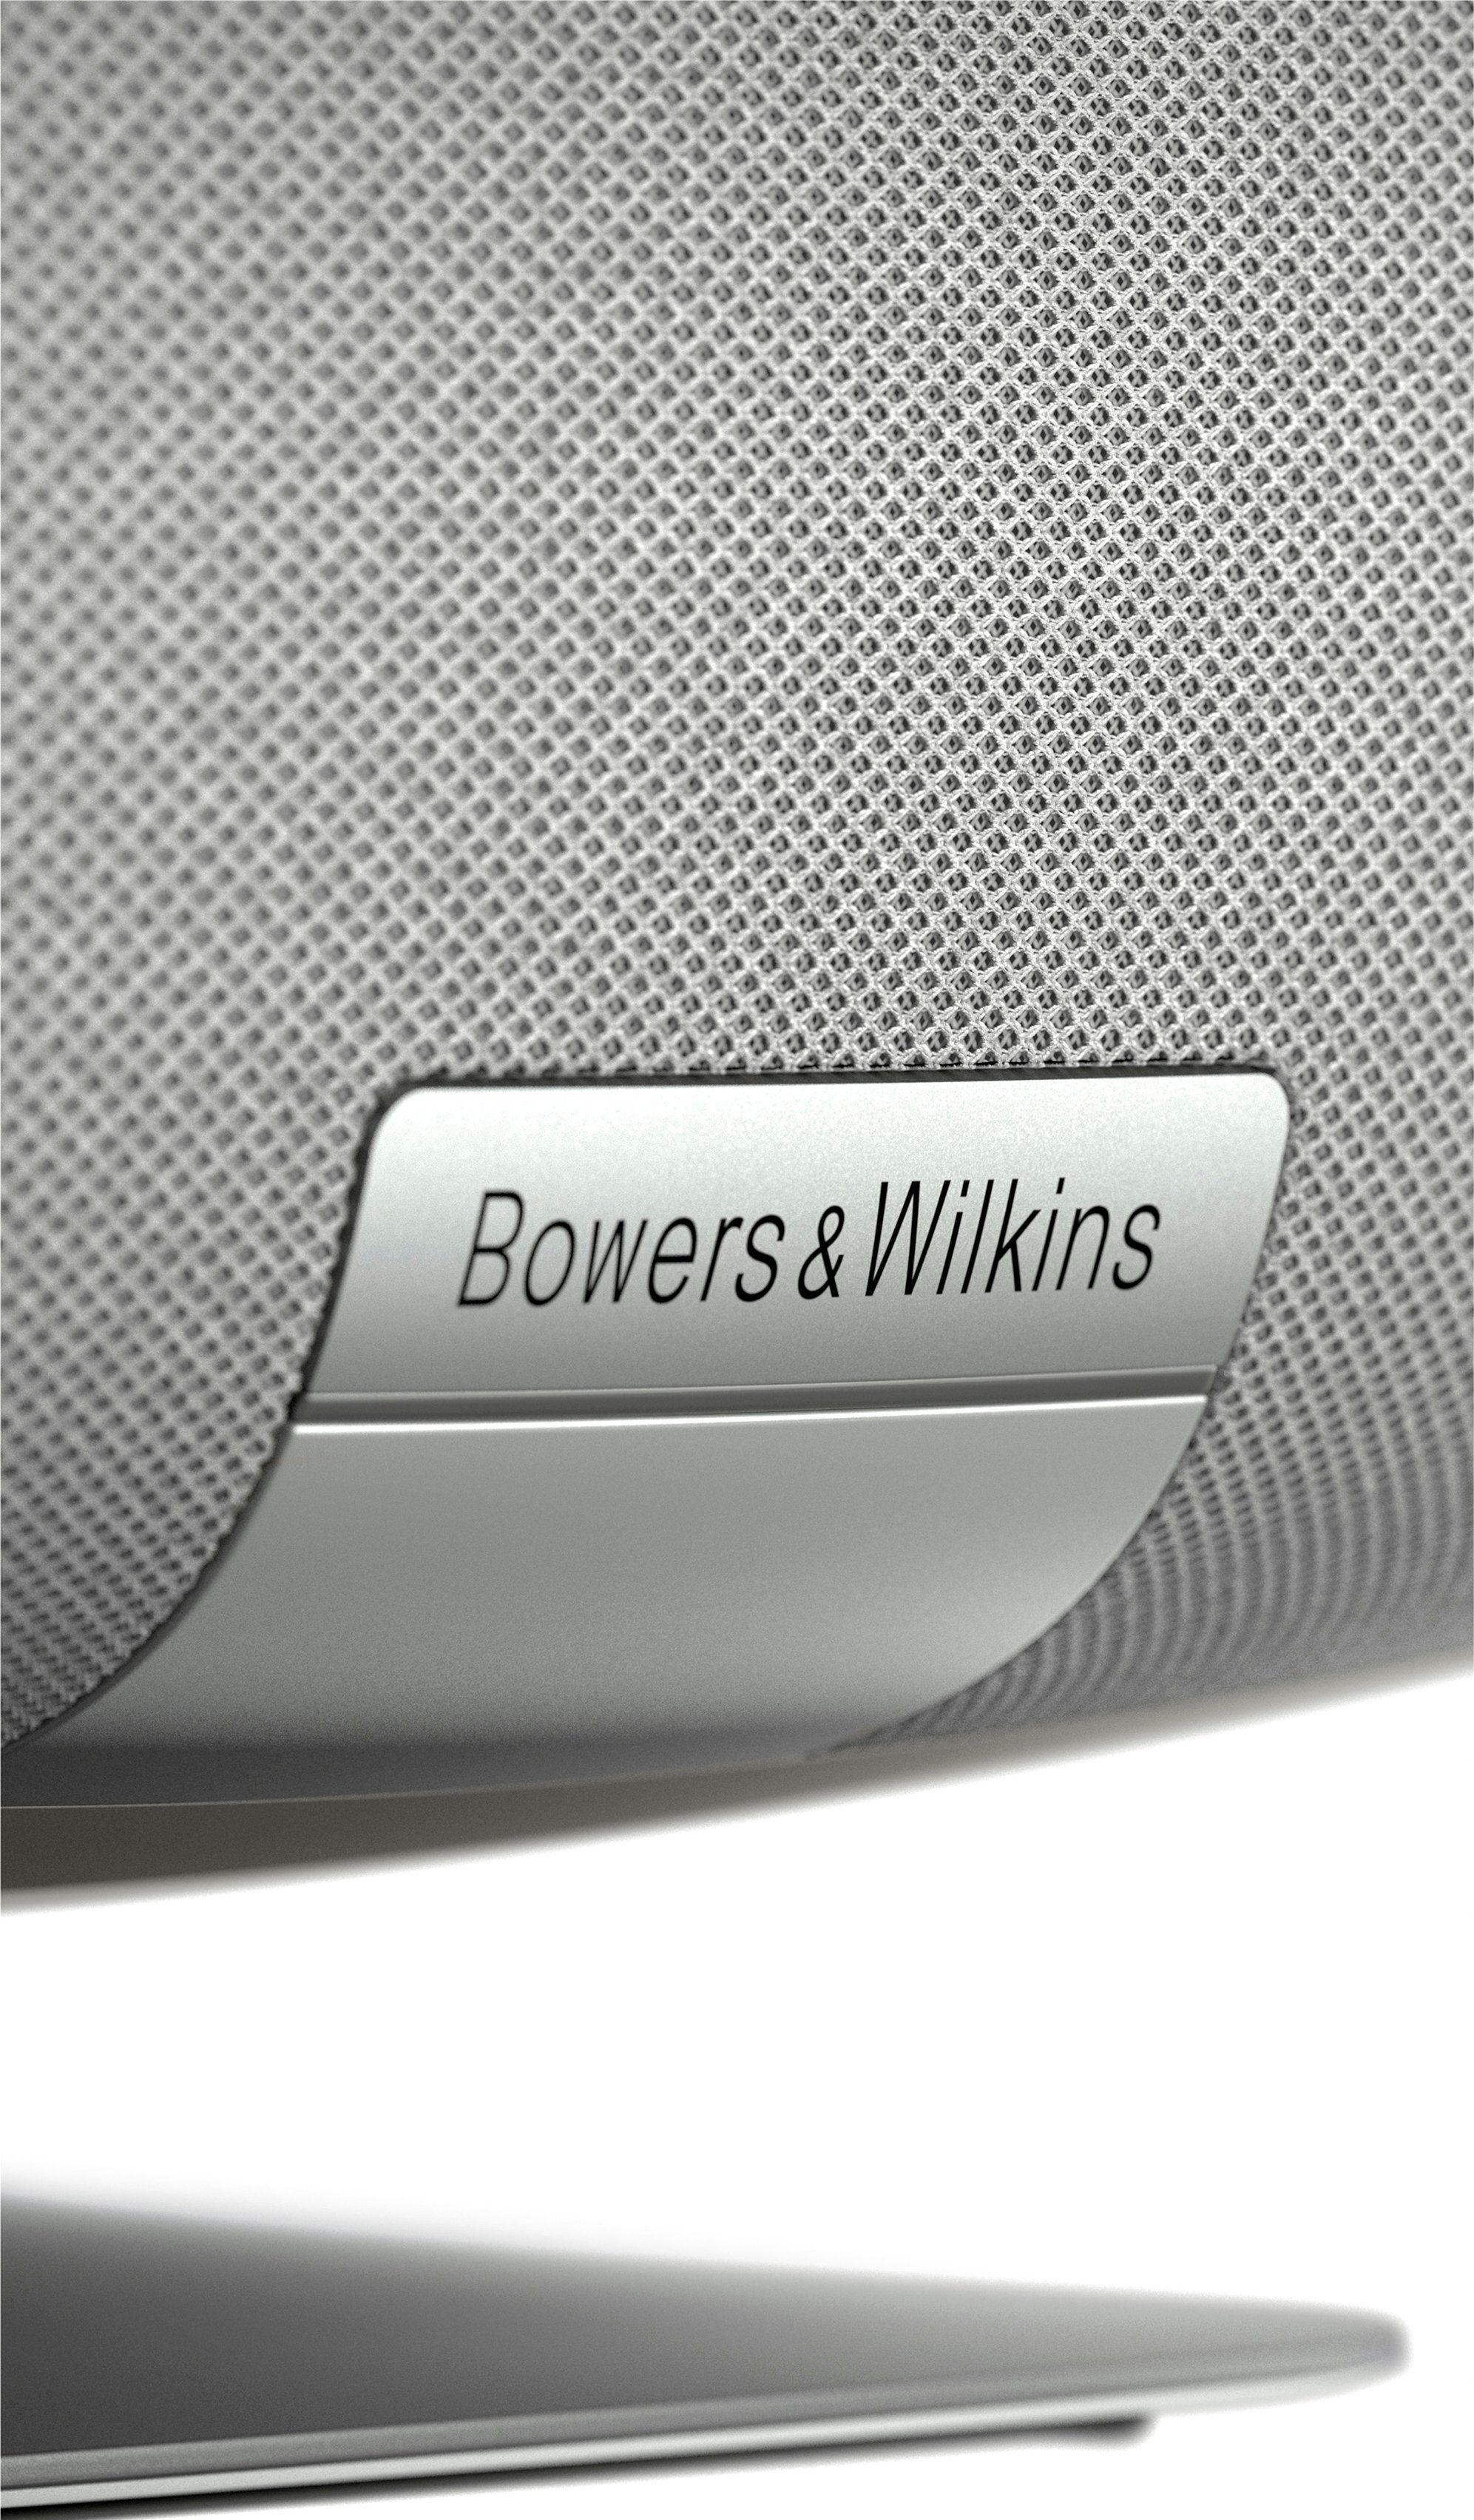 2021 & ZEPPELIN Wilkins Lautsprecher grau Bowers